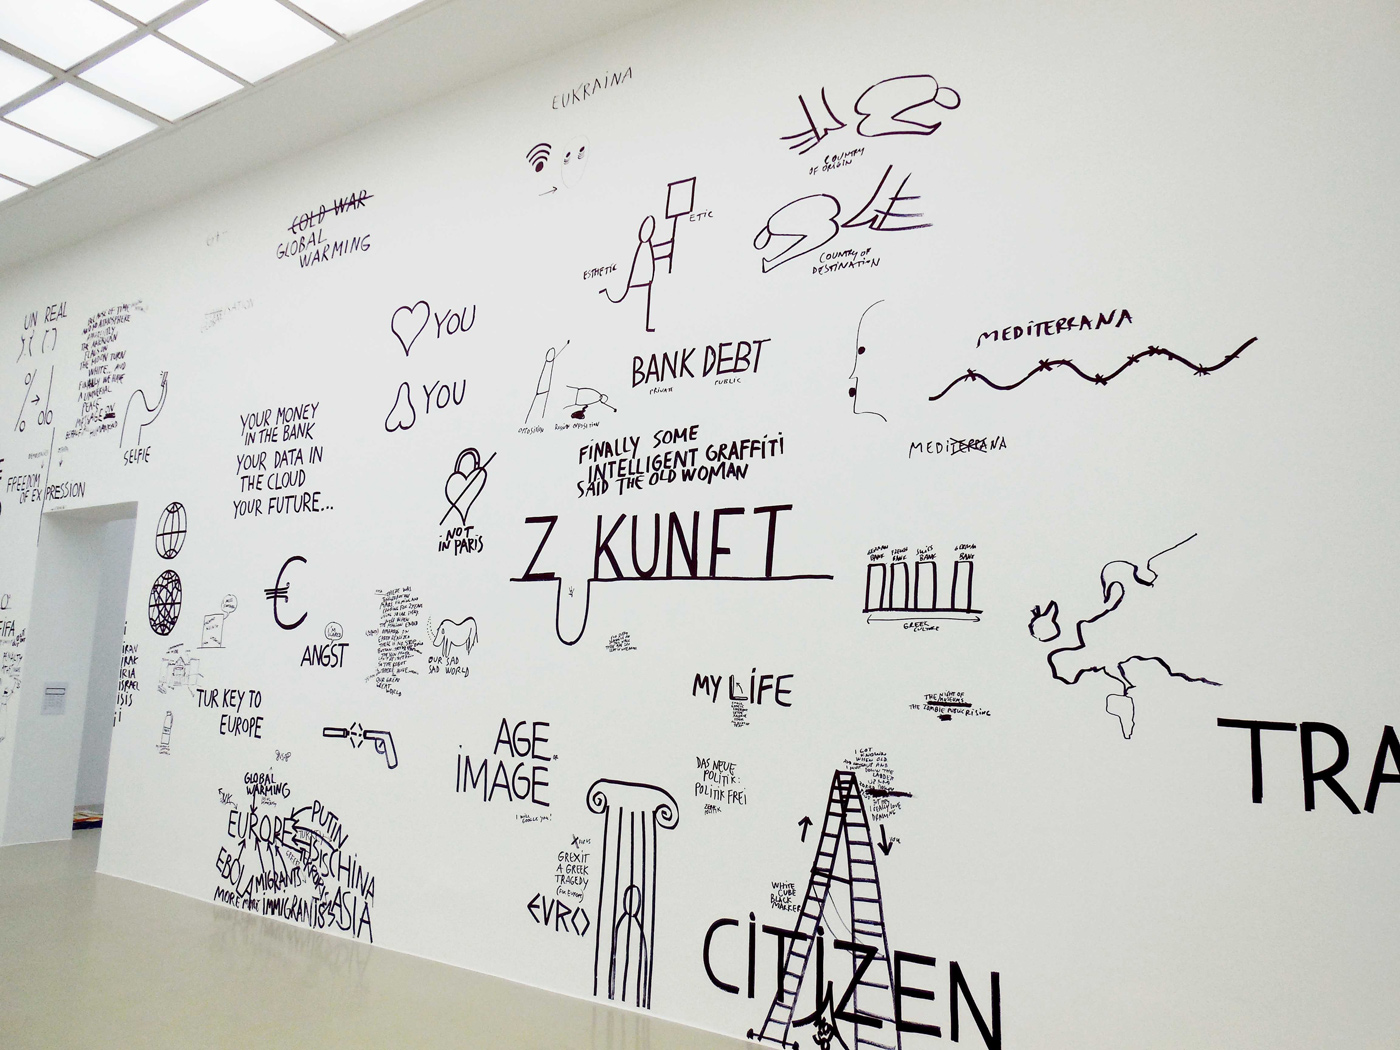 Kunstverein Hannover, Germany, 2015